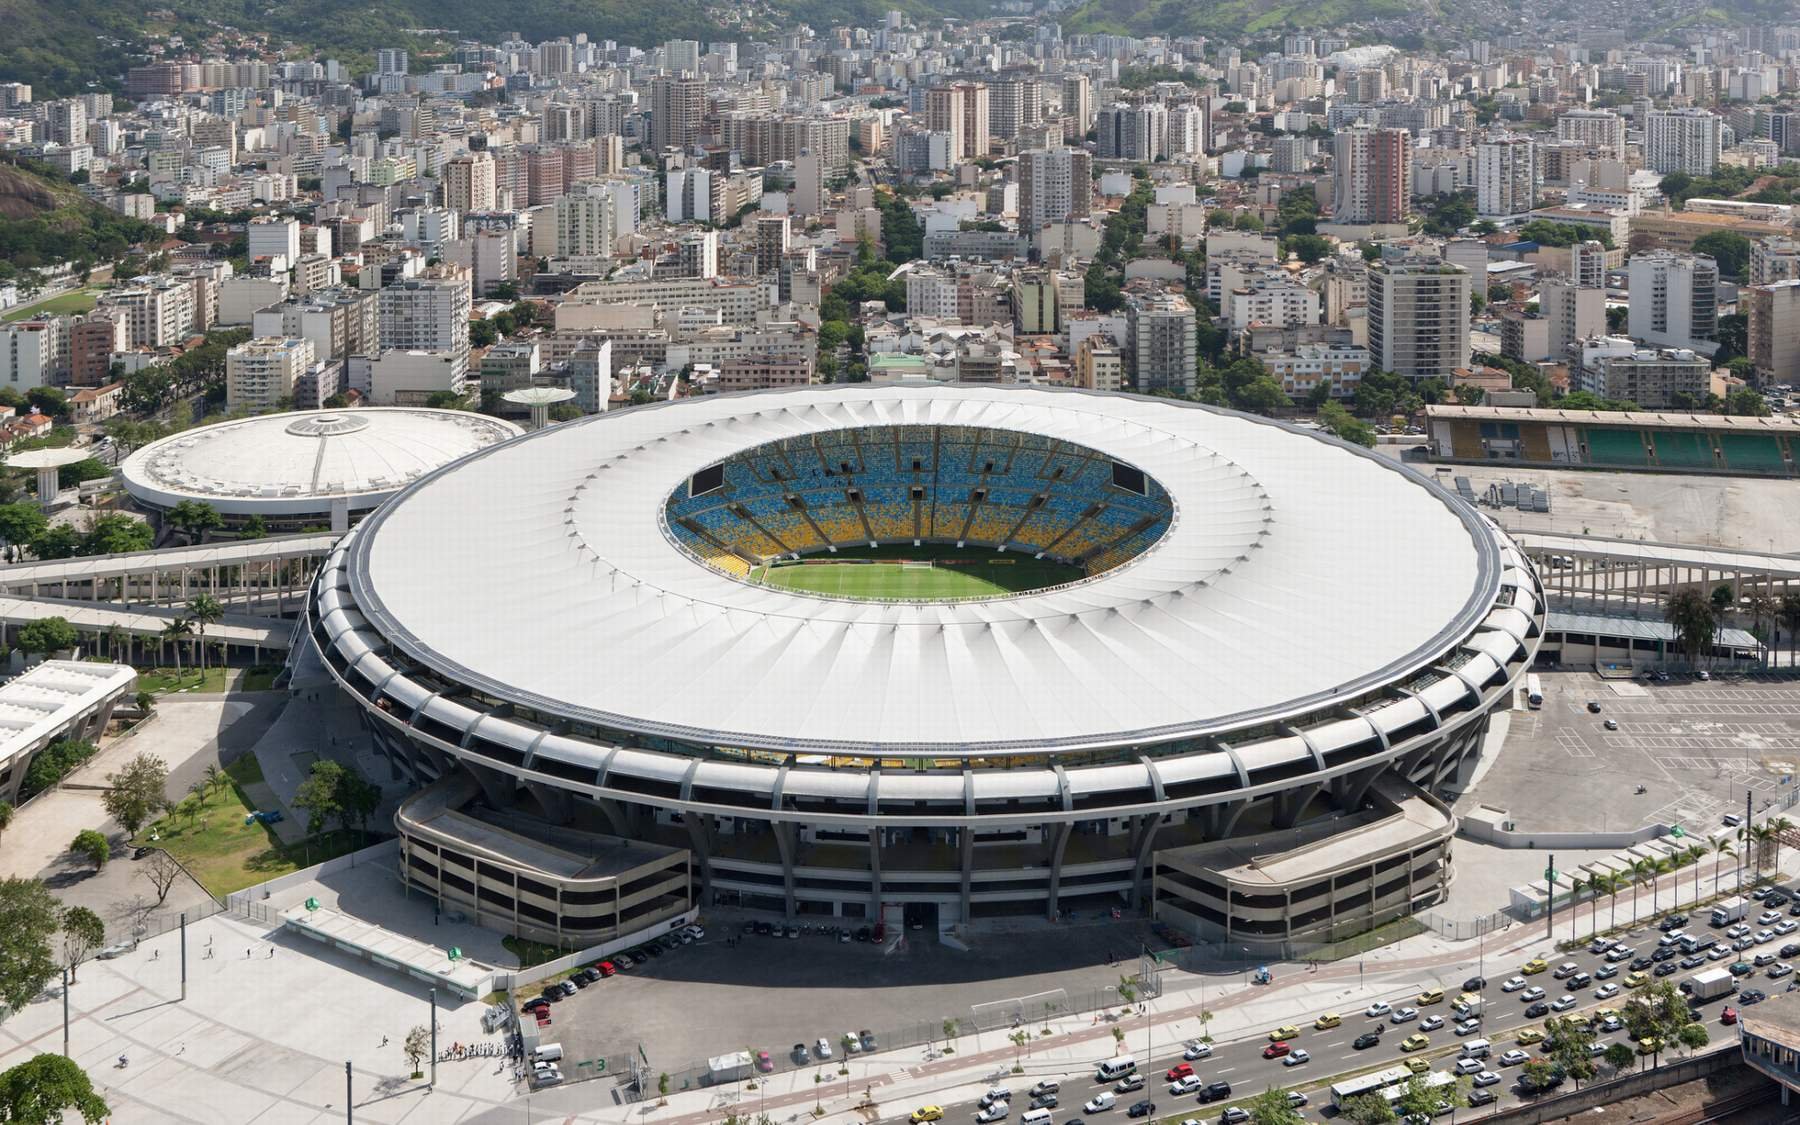  Numele Stadionului Maracana va fi schimbat in Edson Arantes do Nascimento – Regele Pele